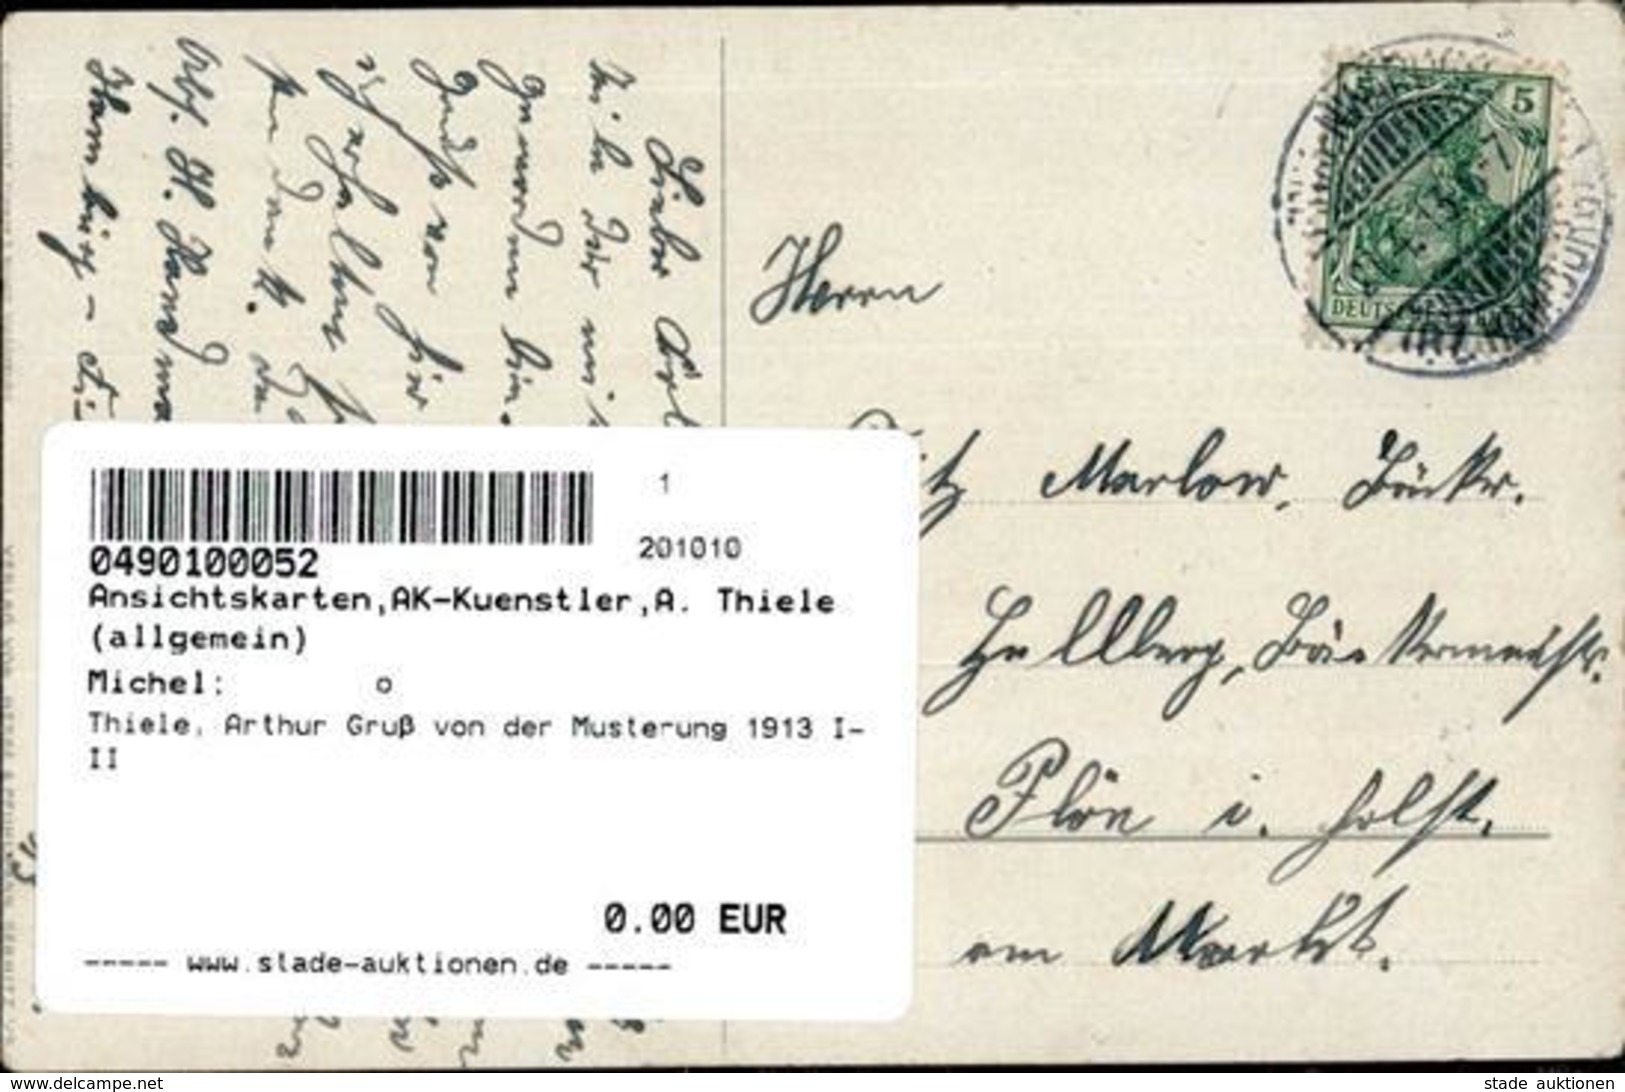 Thiele, Arthur Gruß Von Der Musterung 1913 I-II - Thiele, Arthur